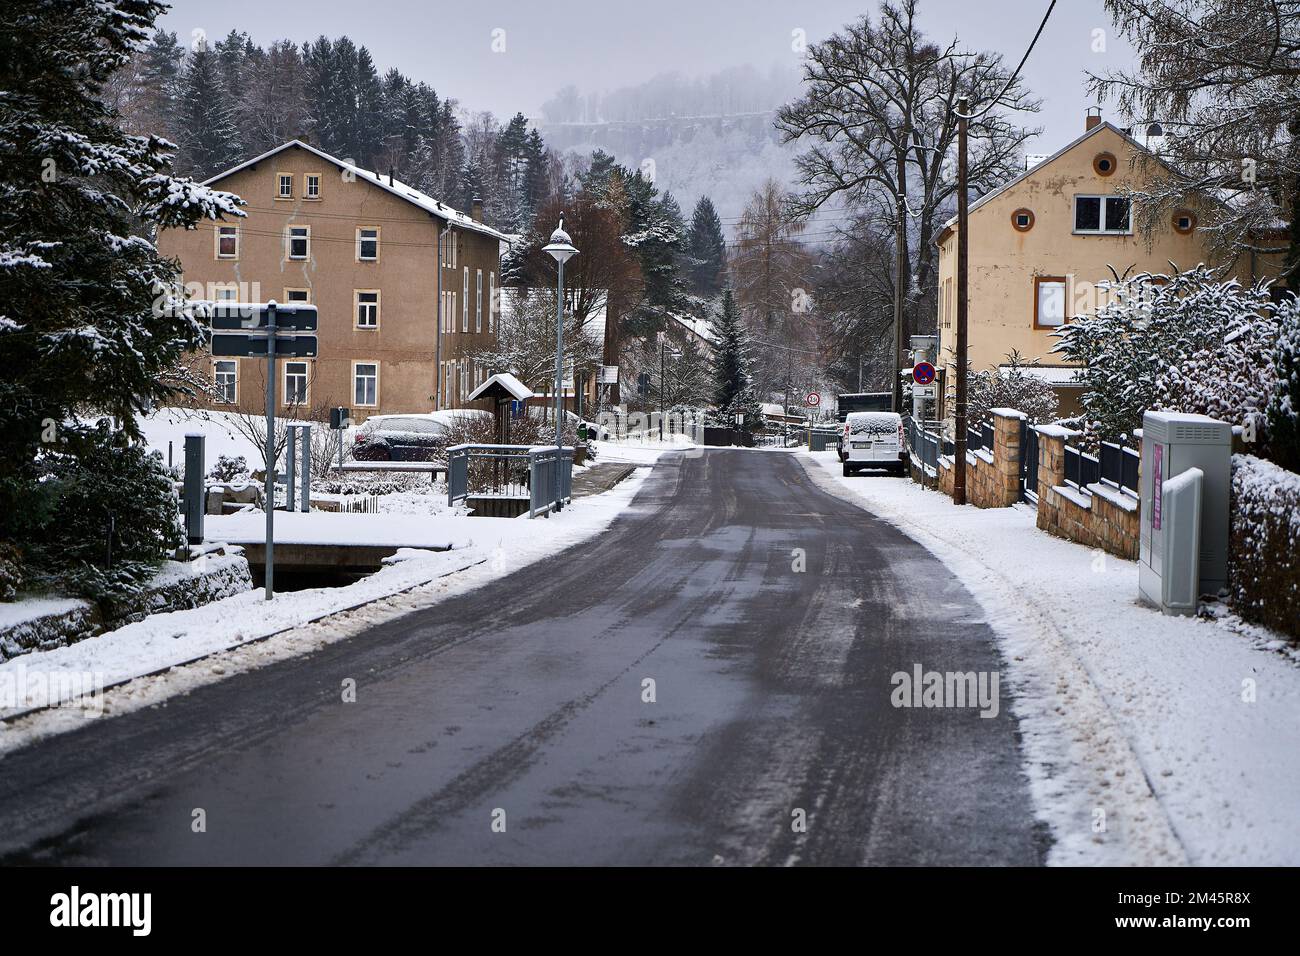 Königstein Sachsen im Winter, schneebedeckte Häuser und Straßen Stockfoto